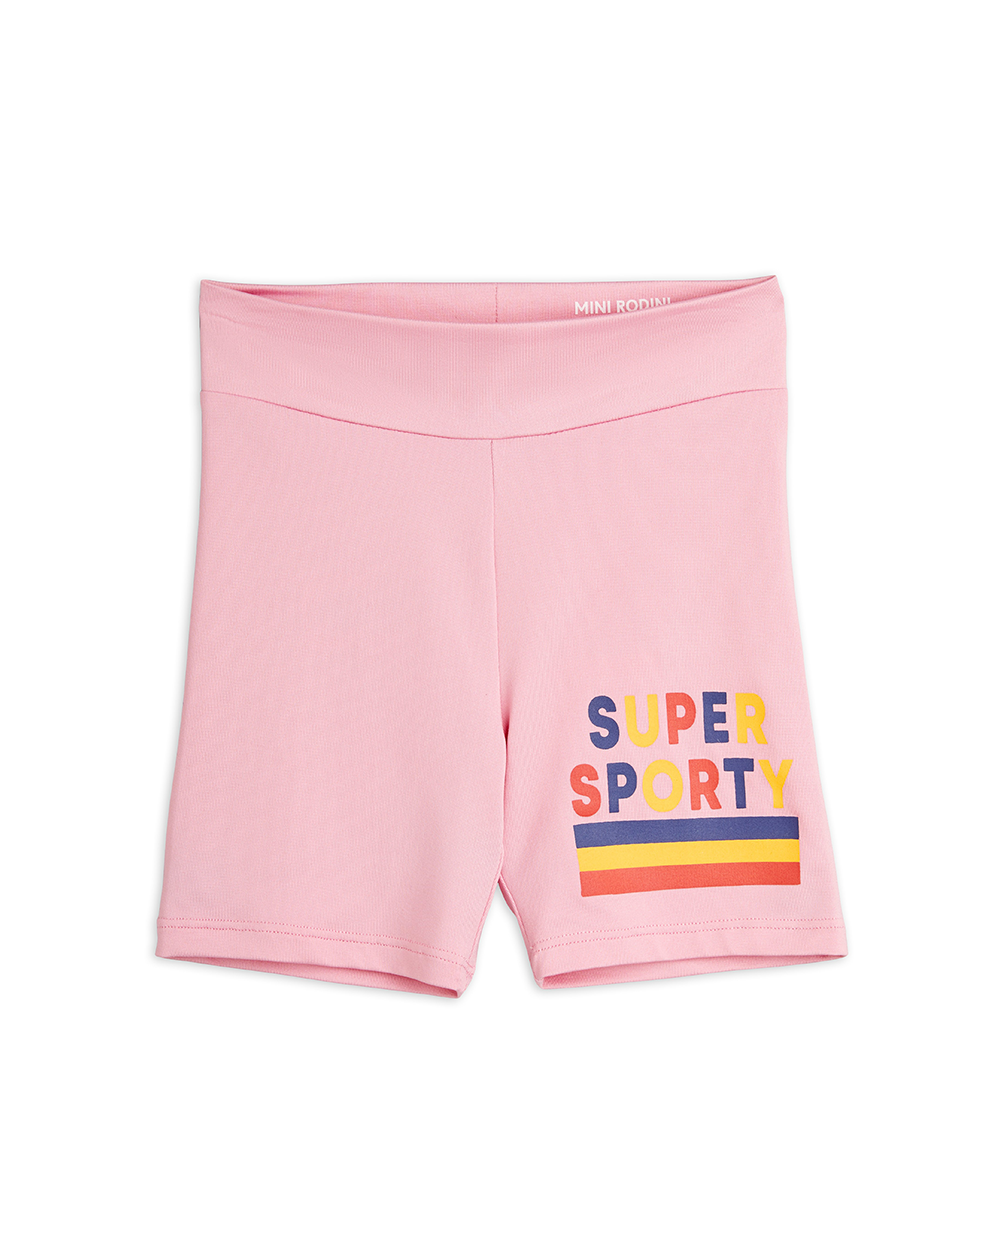 [MINIRODINI] Super sporty sp bike shorts [92/98, 104/110, 116/122]